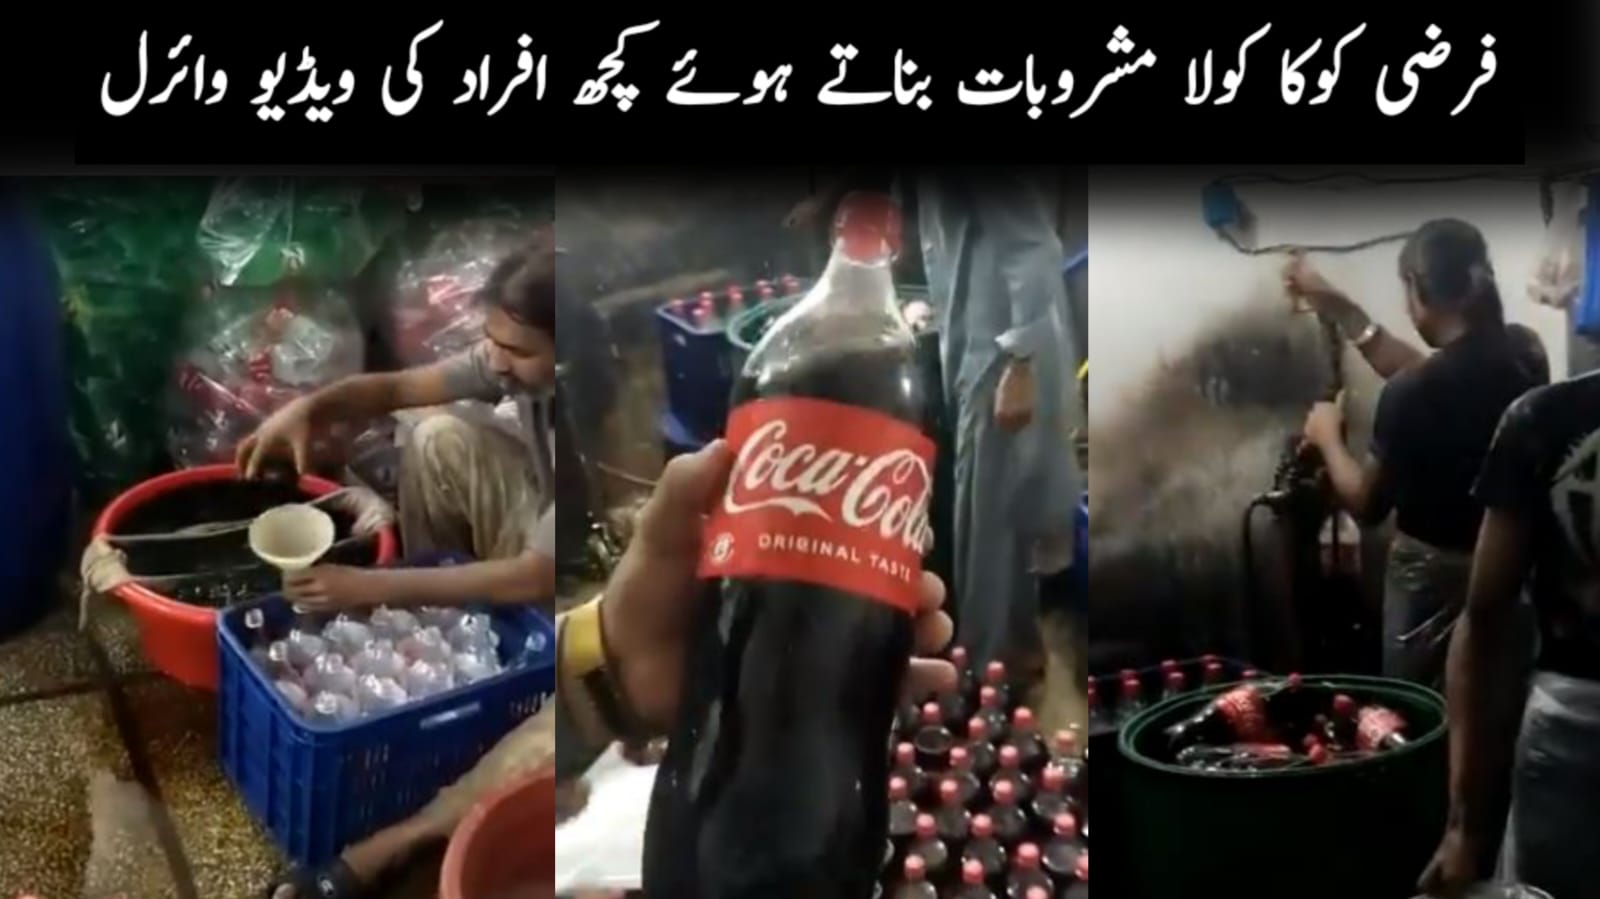 فرضی کوکا کولا مشروبات بناتے ہوئے کچھ افراد کی ویڈیو وائرل 